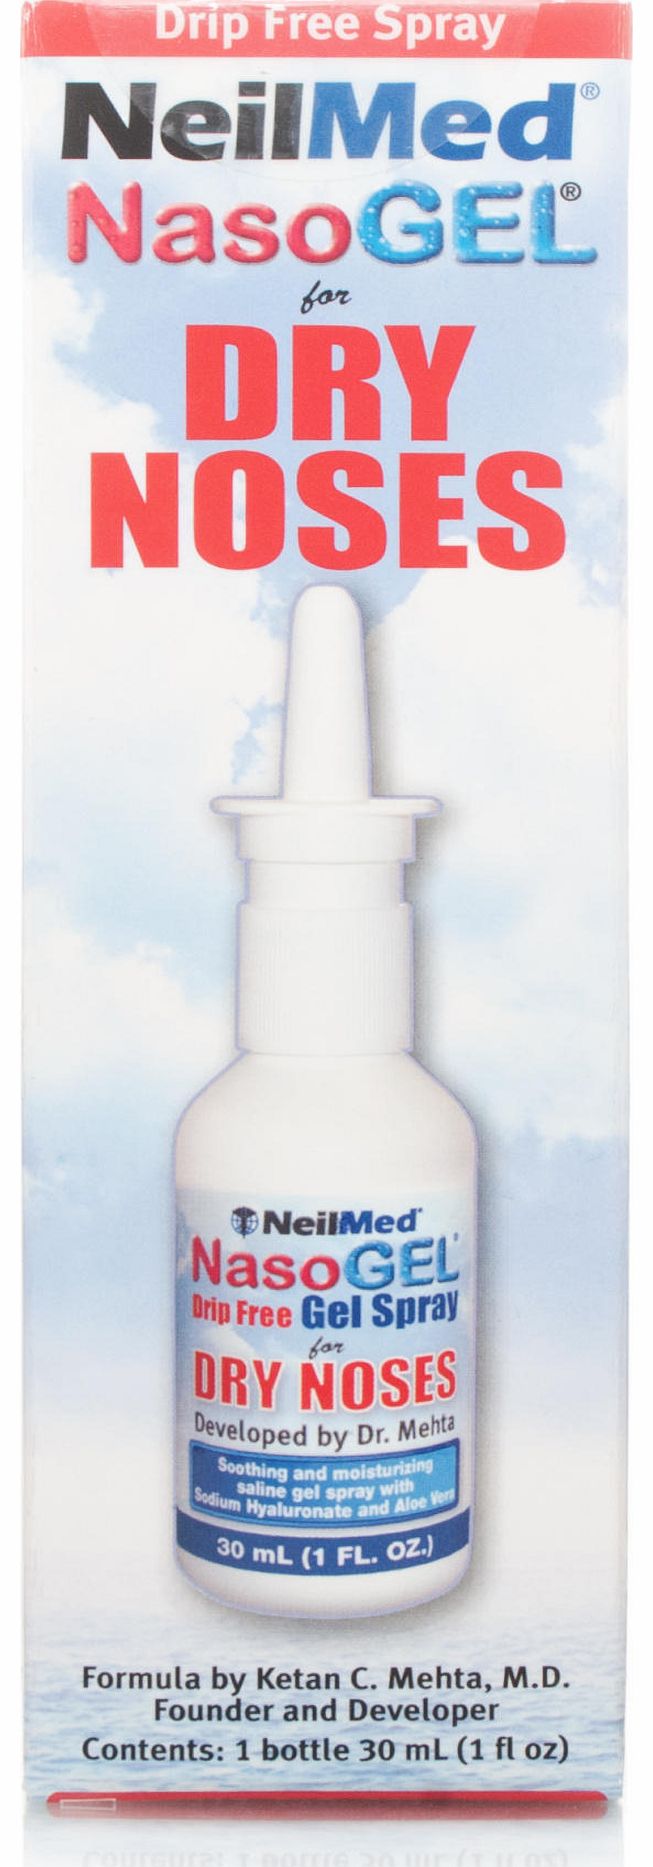 NeilMed NasoGel Moisturizer For Dry Noses